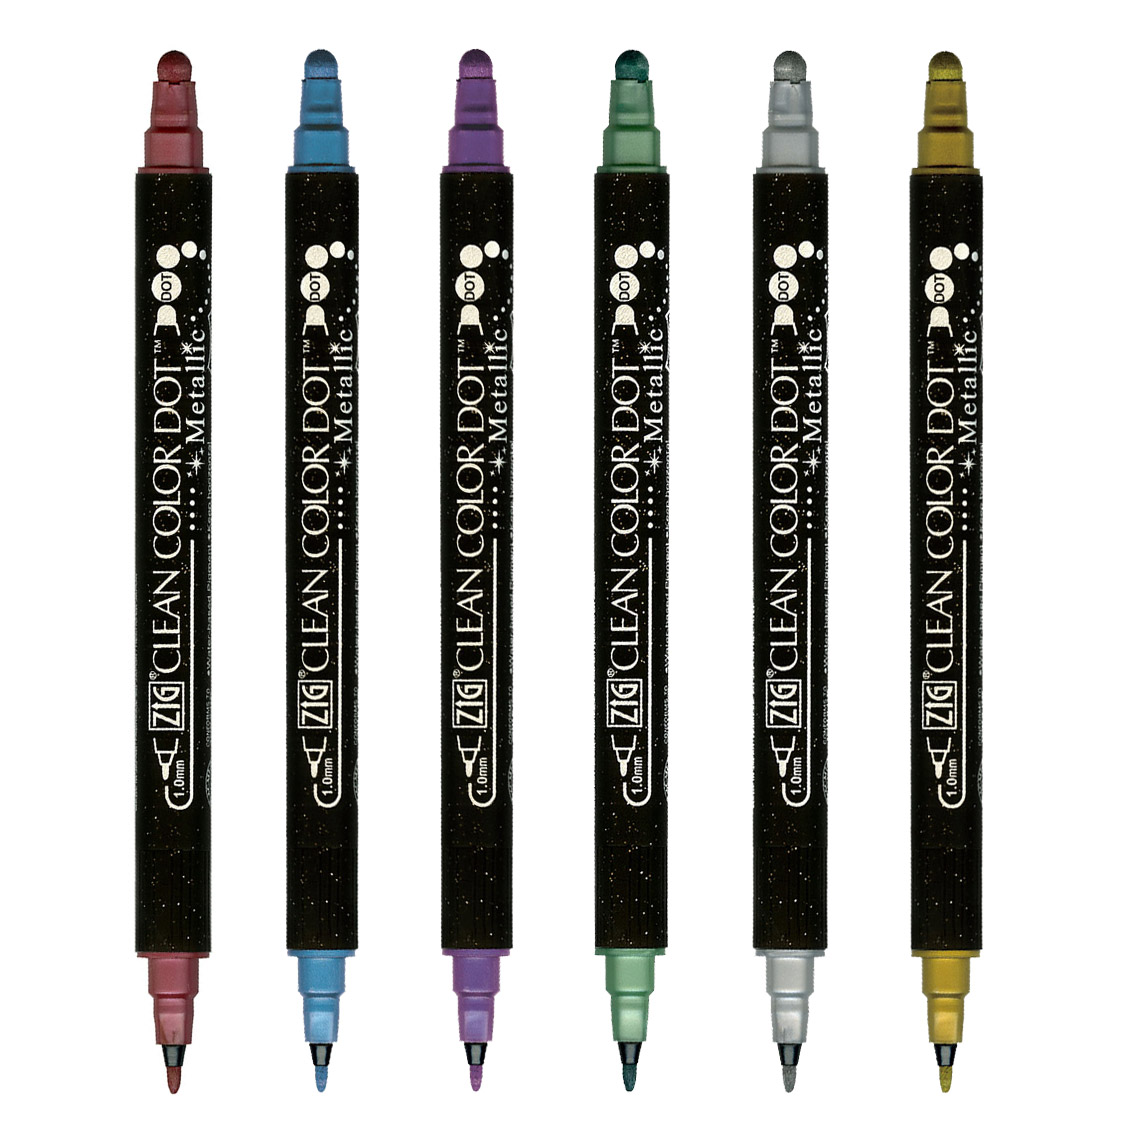 Zig Kuretake Clean Color DOT Pen 4 Set 